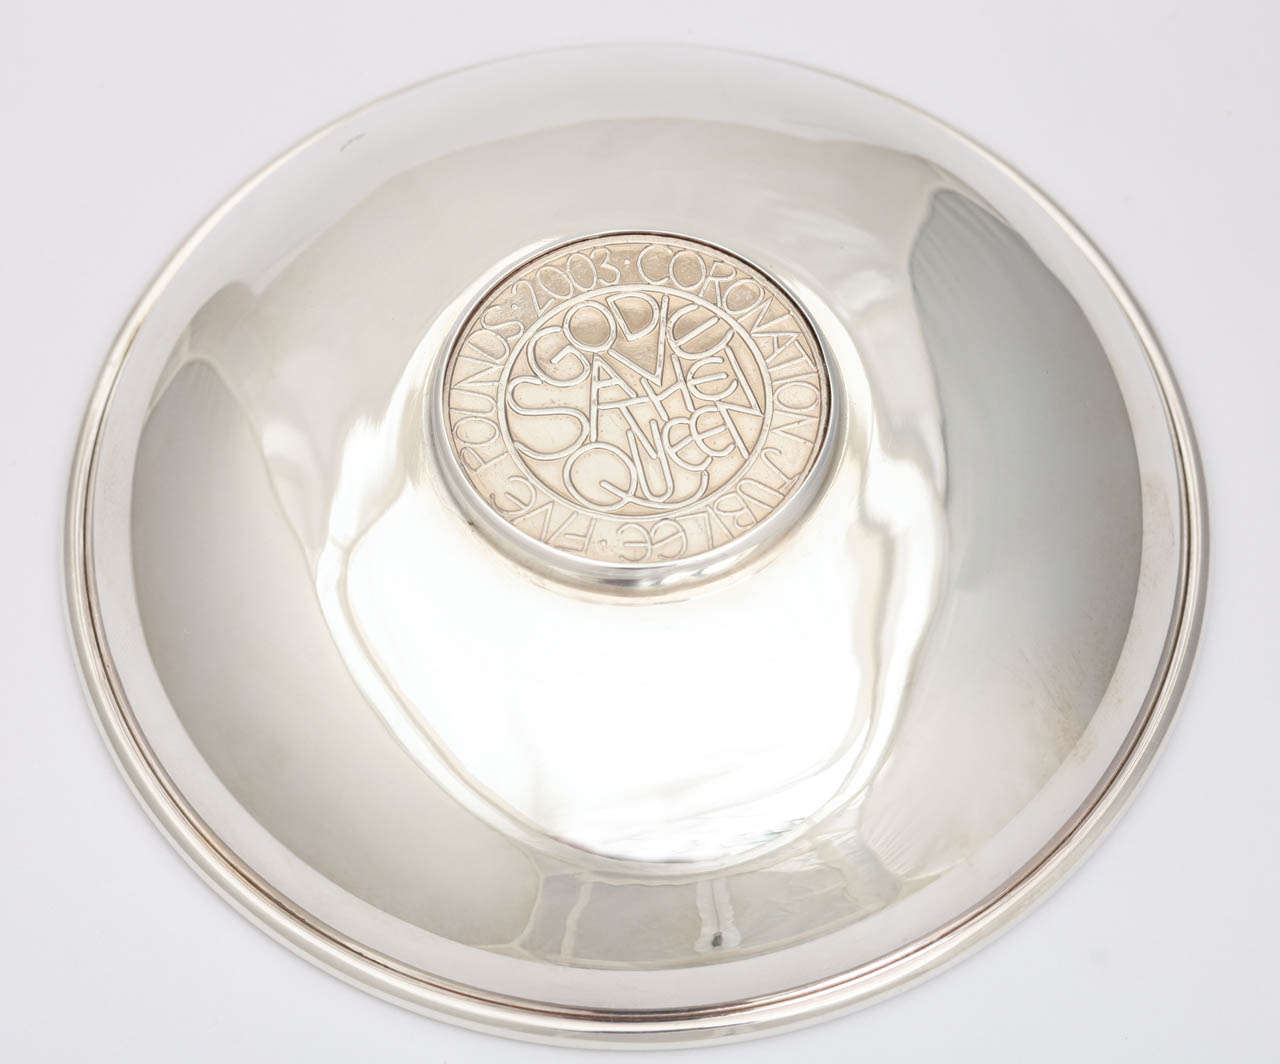 Bulgari Sterling Silver Queen Elizabeth II 50th Anniversary Commemorative Bowl For Sale 4